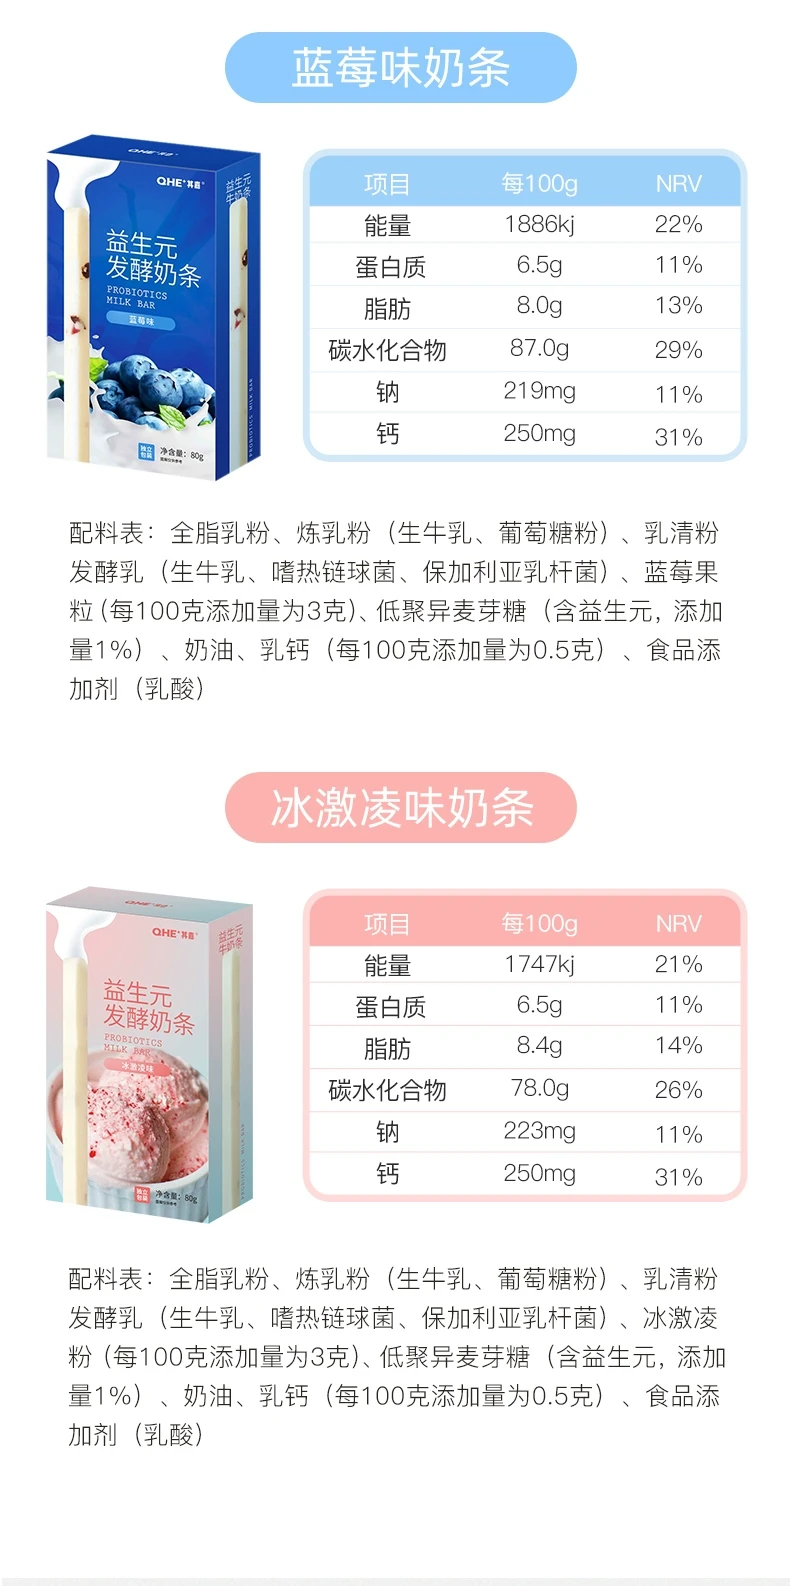 中国 其嘉 益生元牛奶条 蓝莓味 80克 酸奶邂逅大果粒